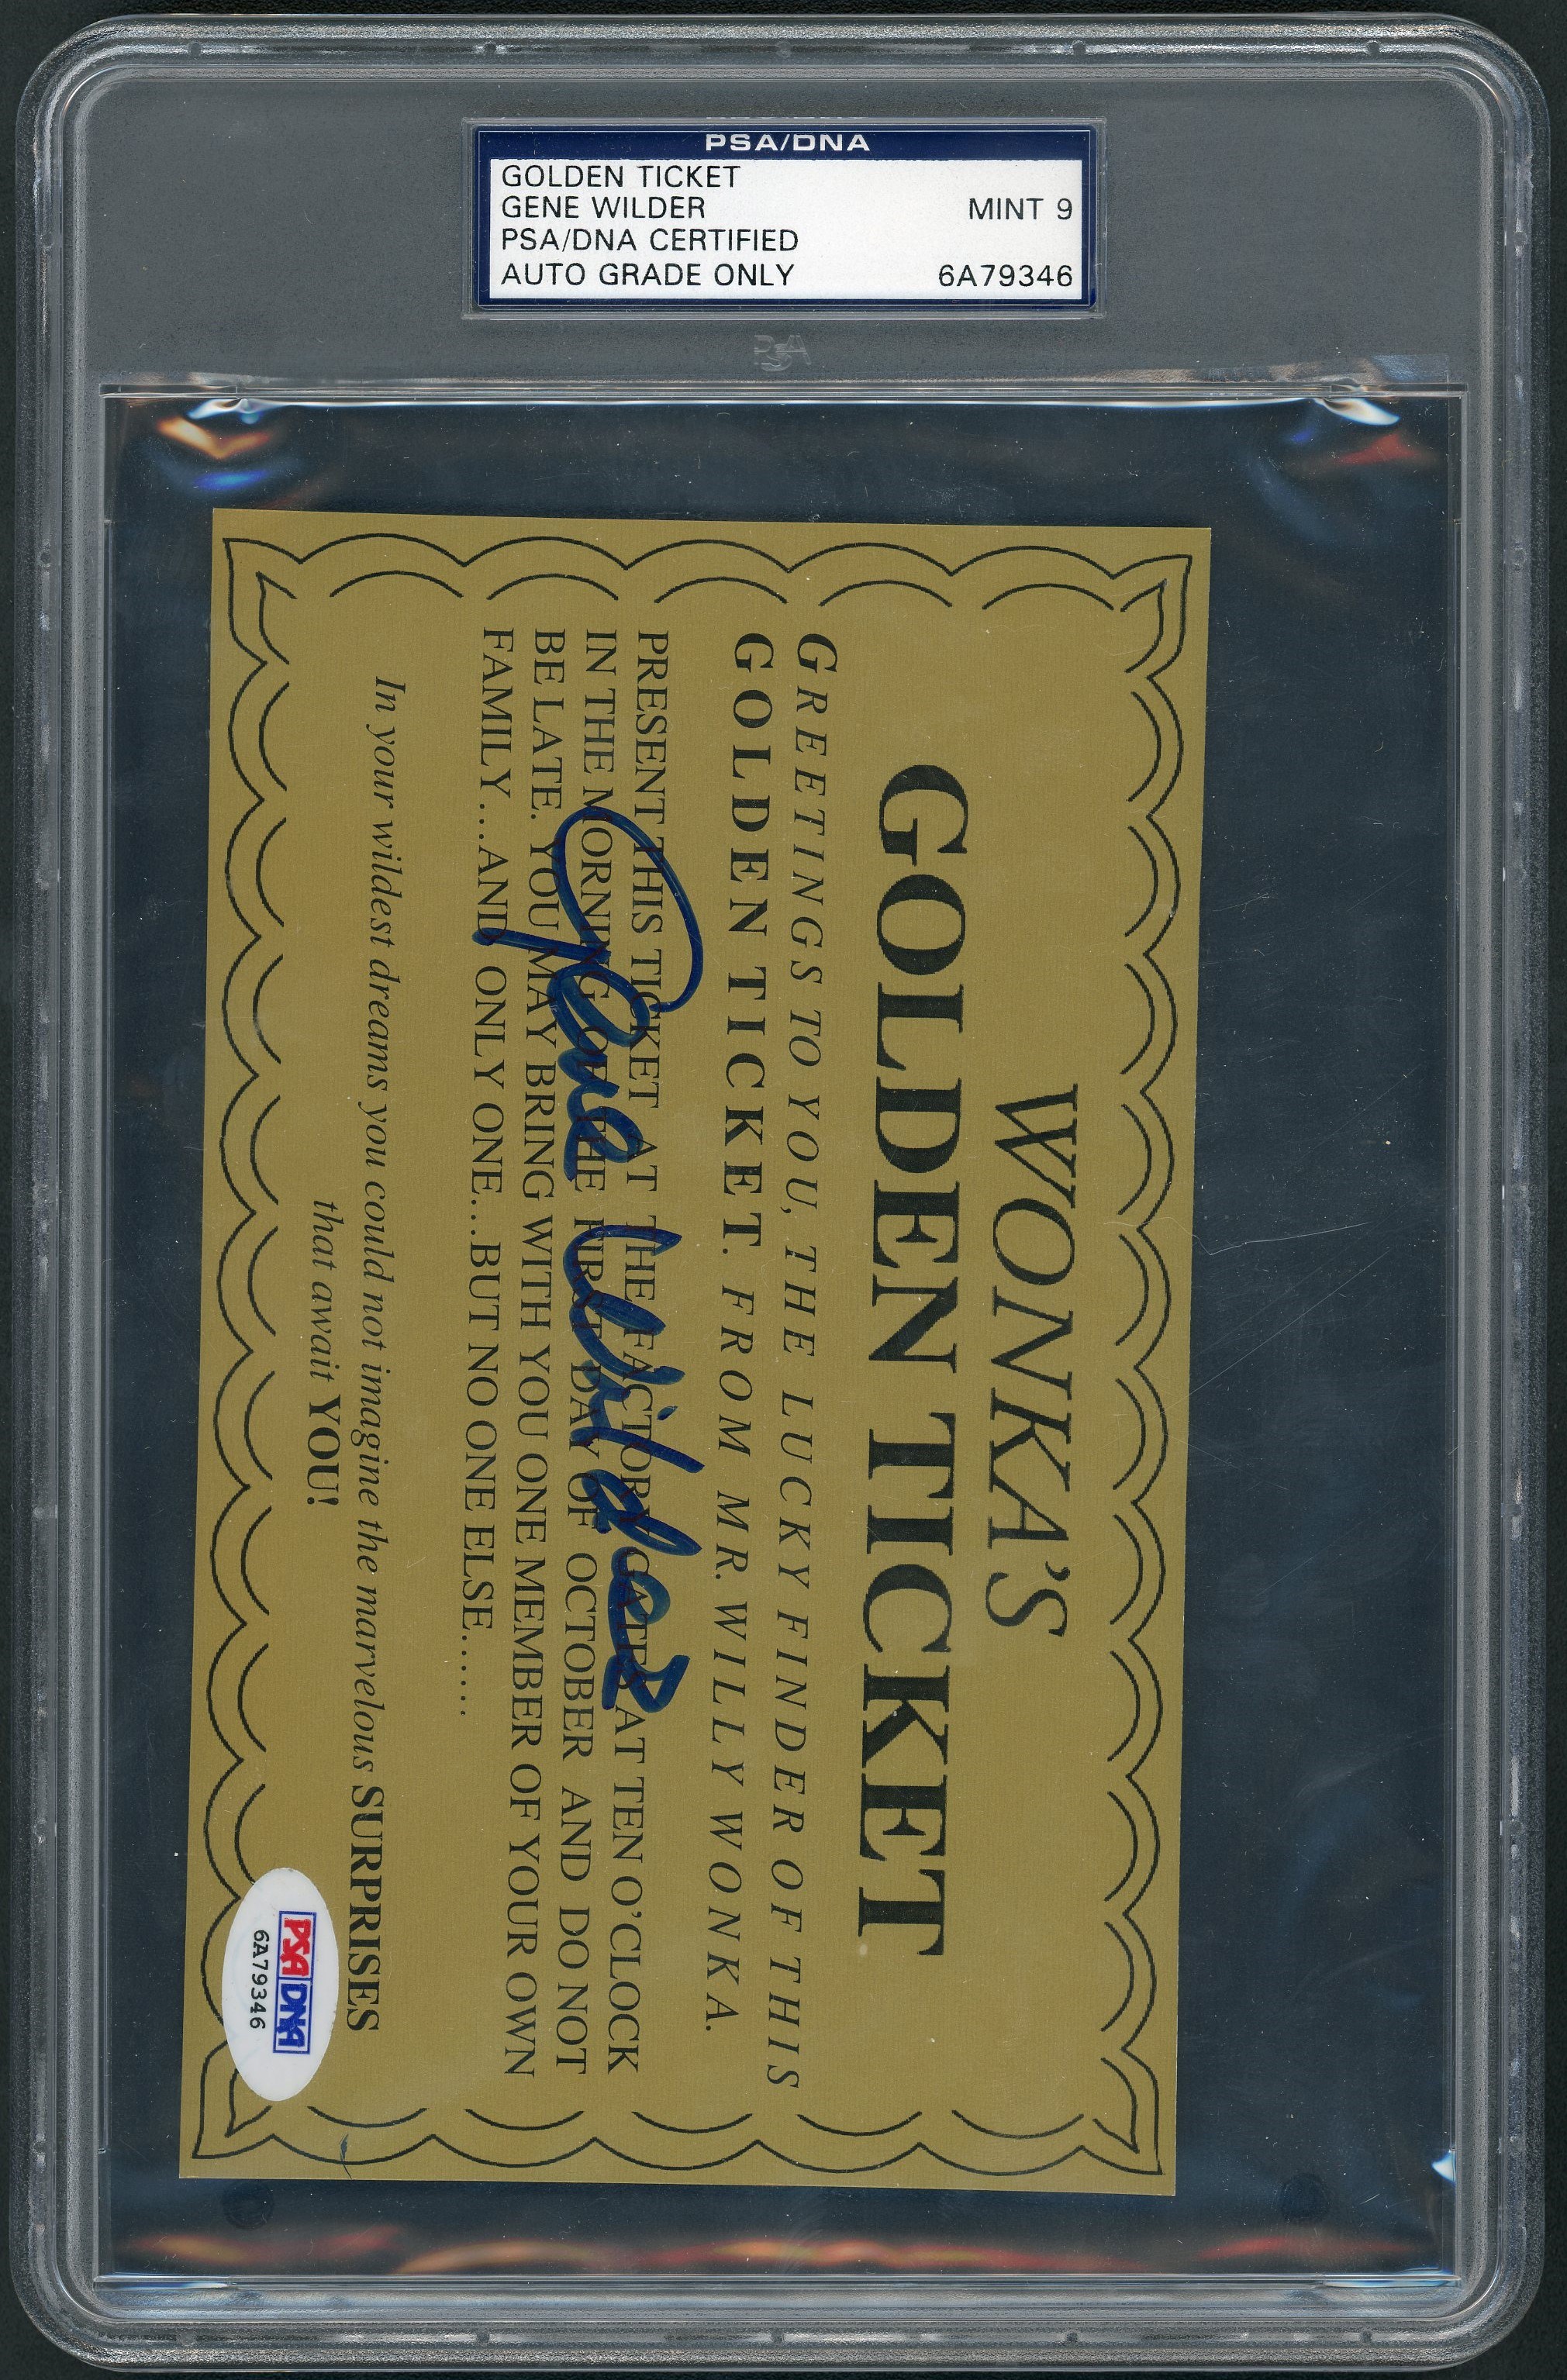 - Willy Wonka "Golden Ticket" Signed by Gene Wilder - PSA/DNA MINT 9